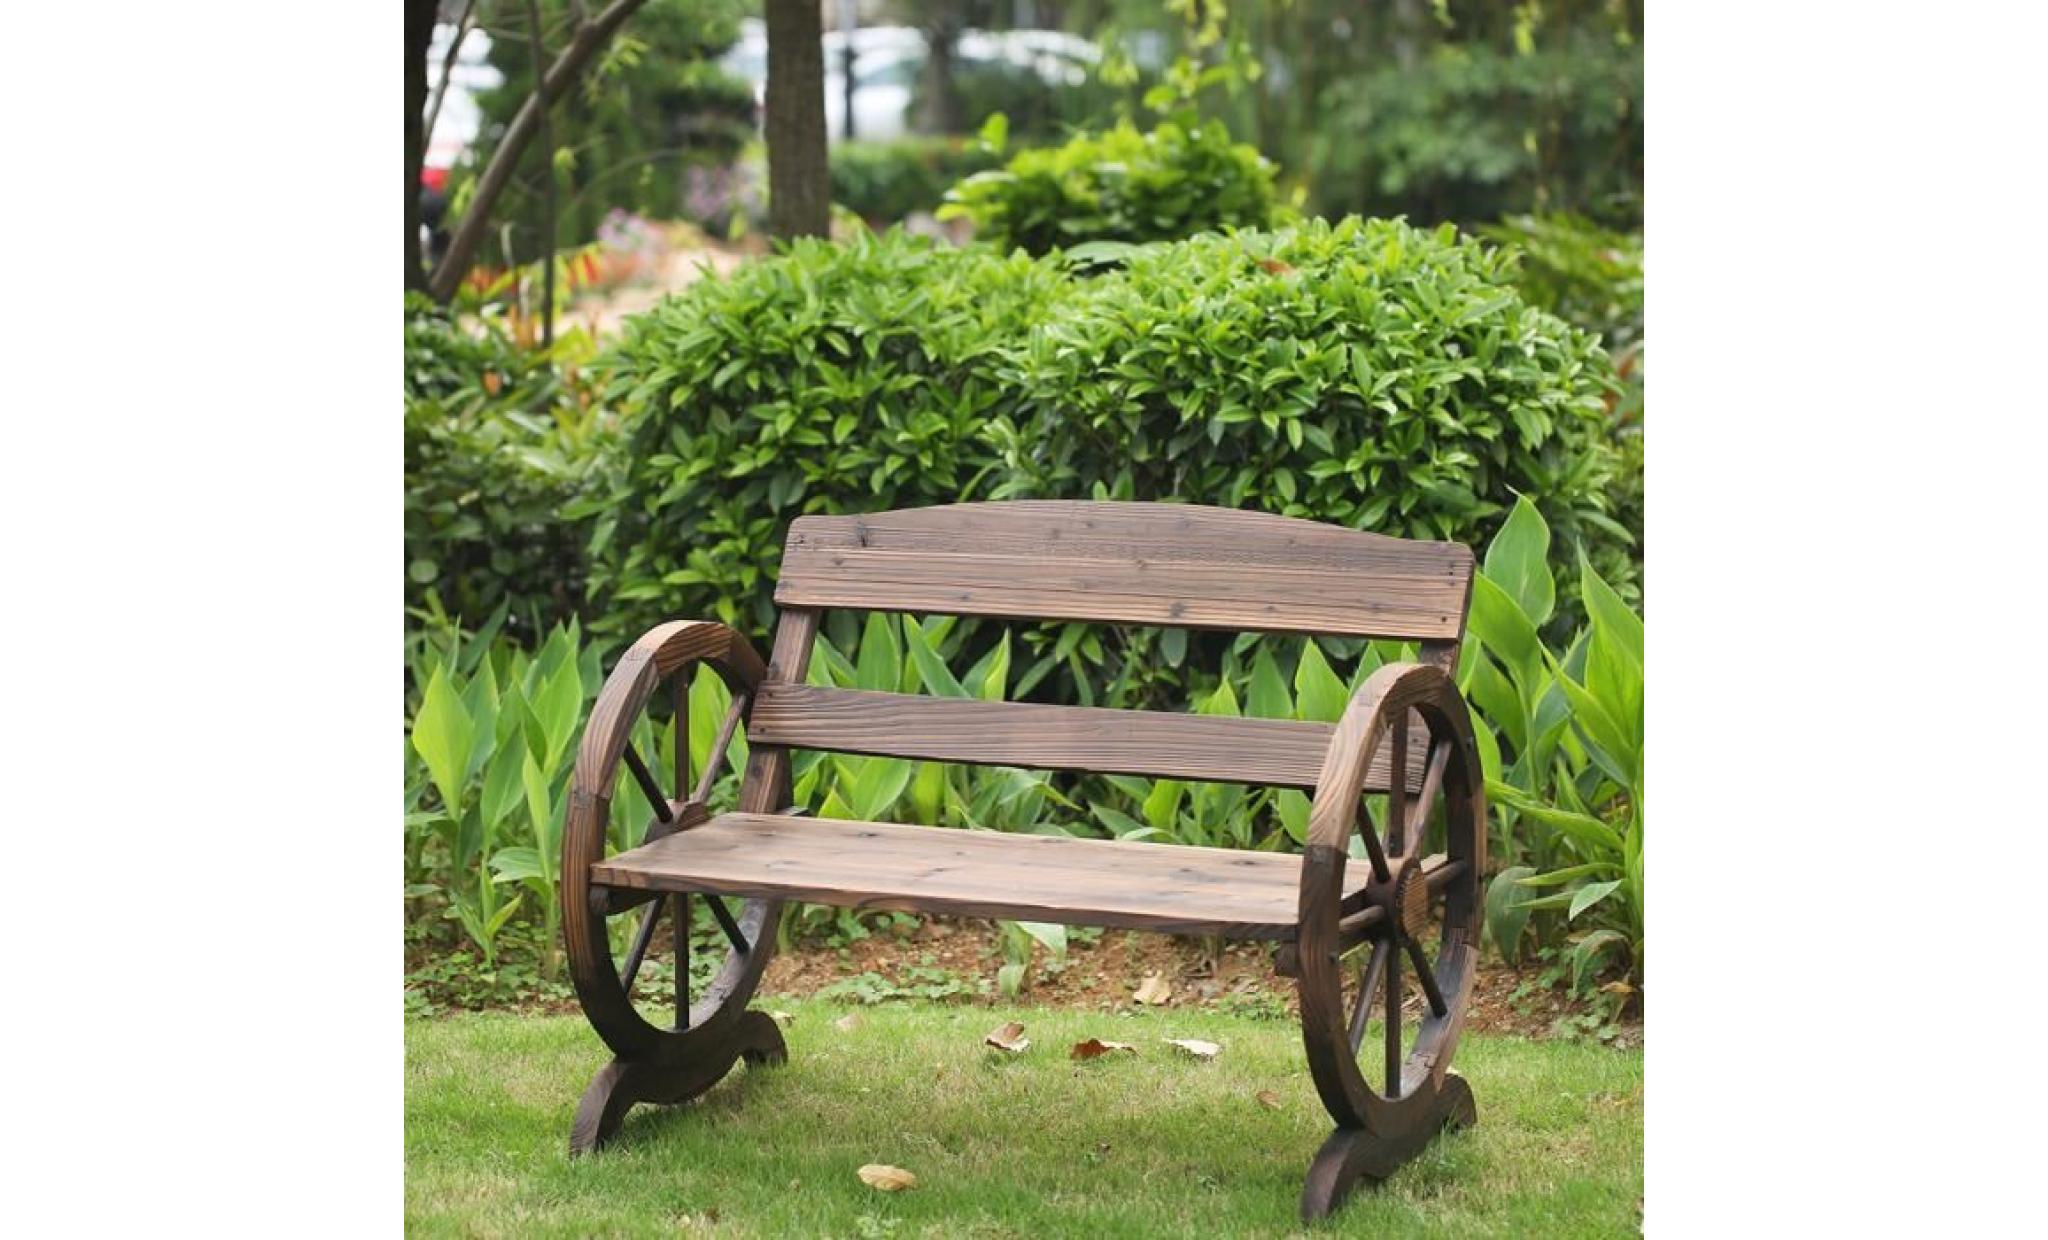 ikayaa banc 2 places en bois extérieur jardin patio style rustique forme de de roue capacité de charge max 250kg pas cher